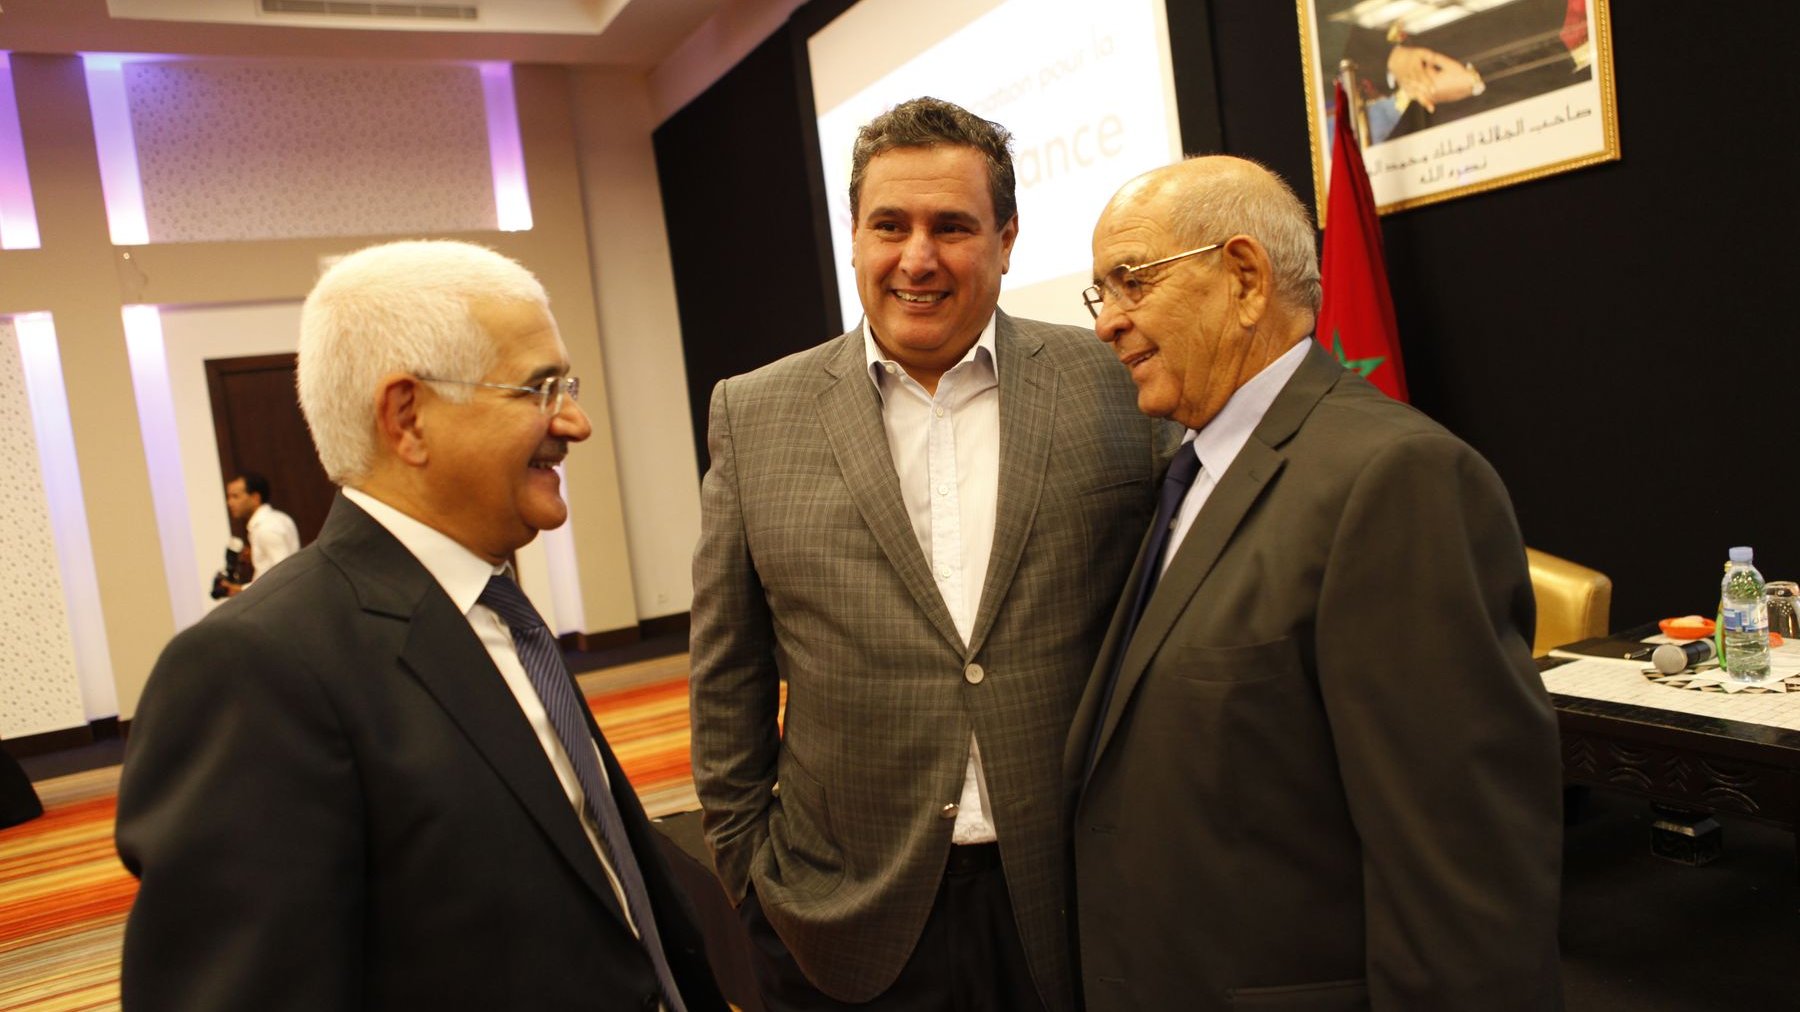 Mohamed El Yazid Zellou, maire d'Agadir, en compagnie de Aziz Akhannouch. Les deux hommes ont été très présents pour le Concert de la Tolérance, et notamment pour ce colloque sur le dialogue des cultures.
